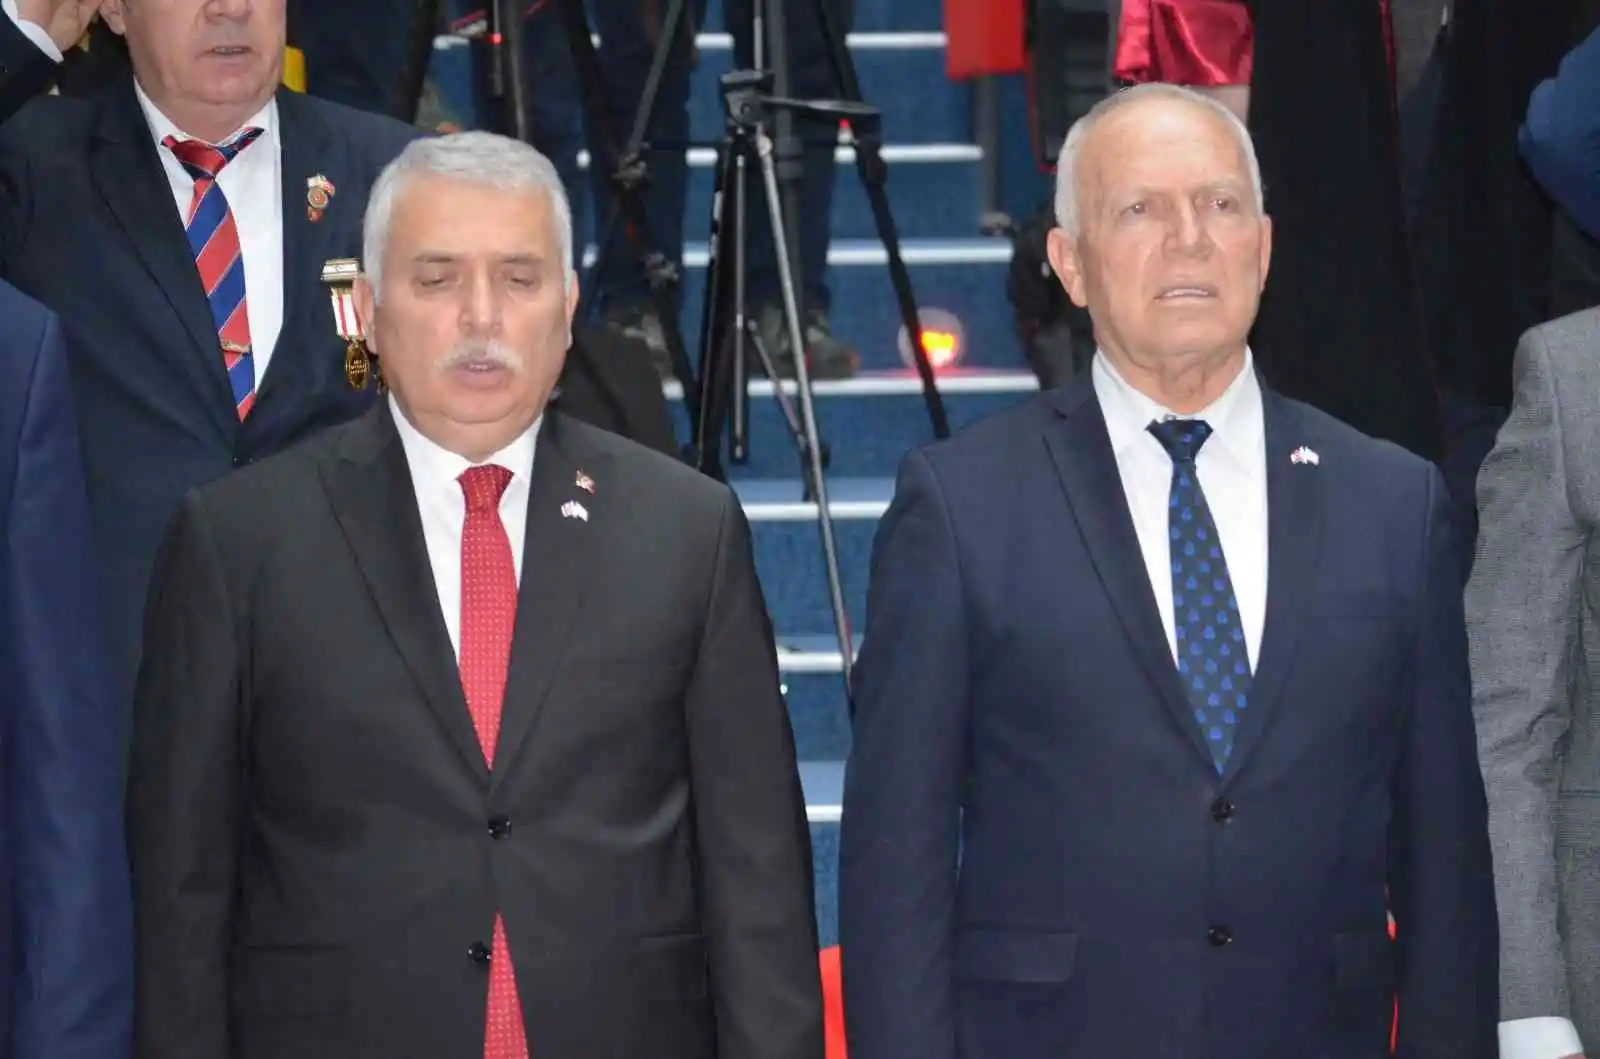 KKTC Meclis Başkanı Töre: “Türk Birliği mutlaka kurulacak”
